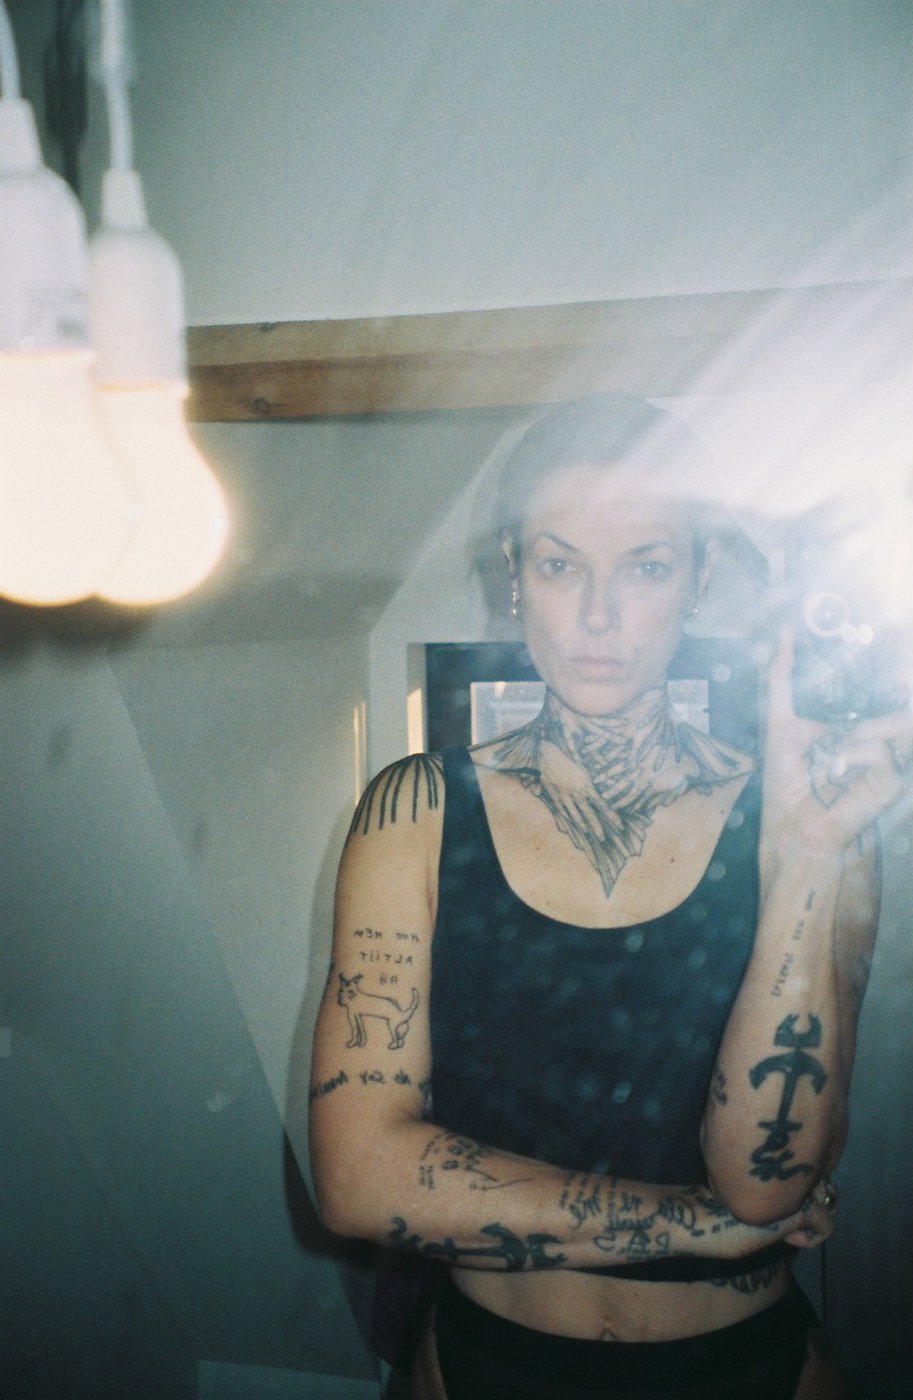 Murielle Victorine Scherre fotografiert sich selbst im Spiegel